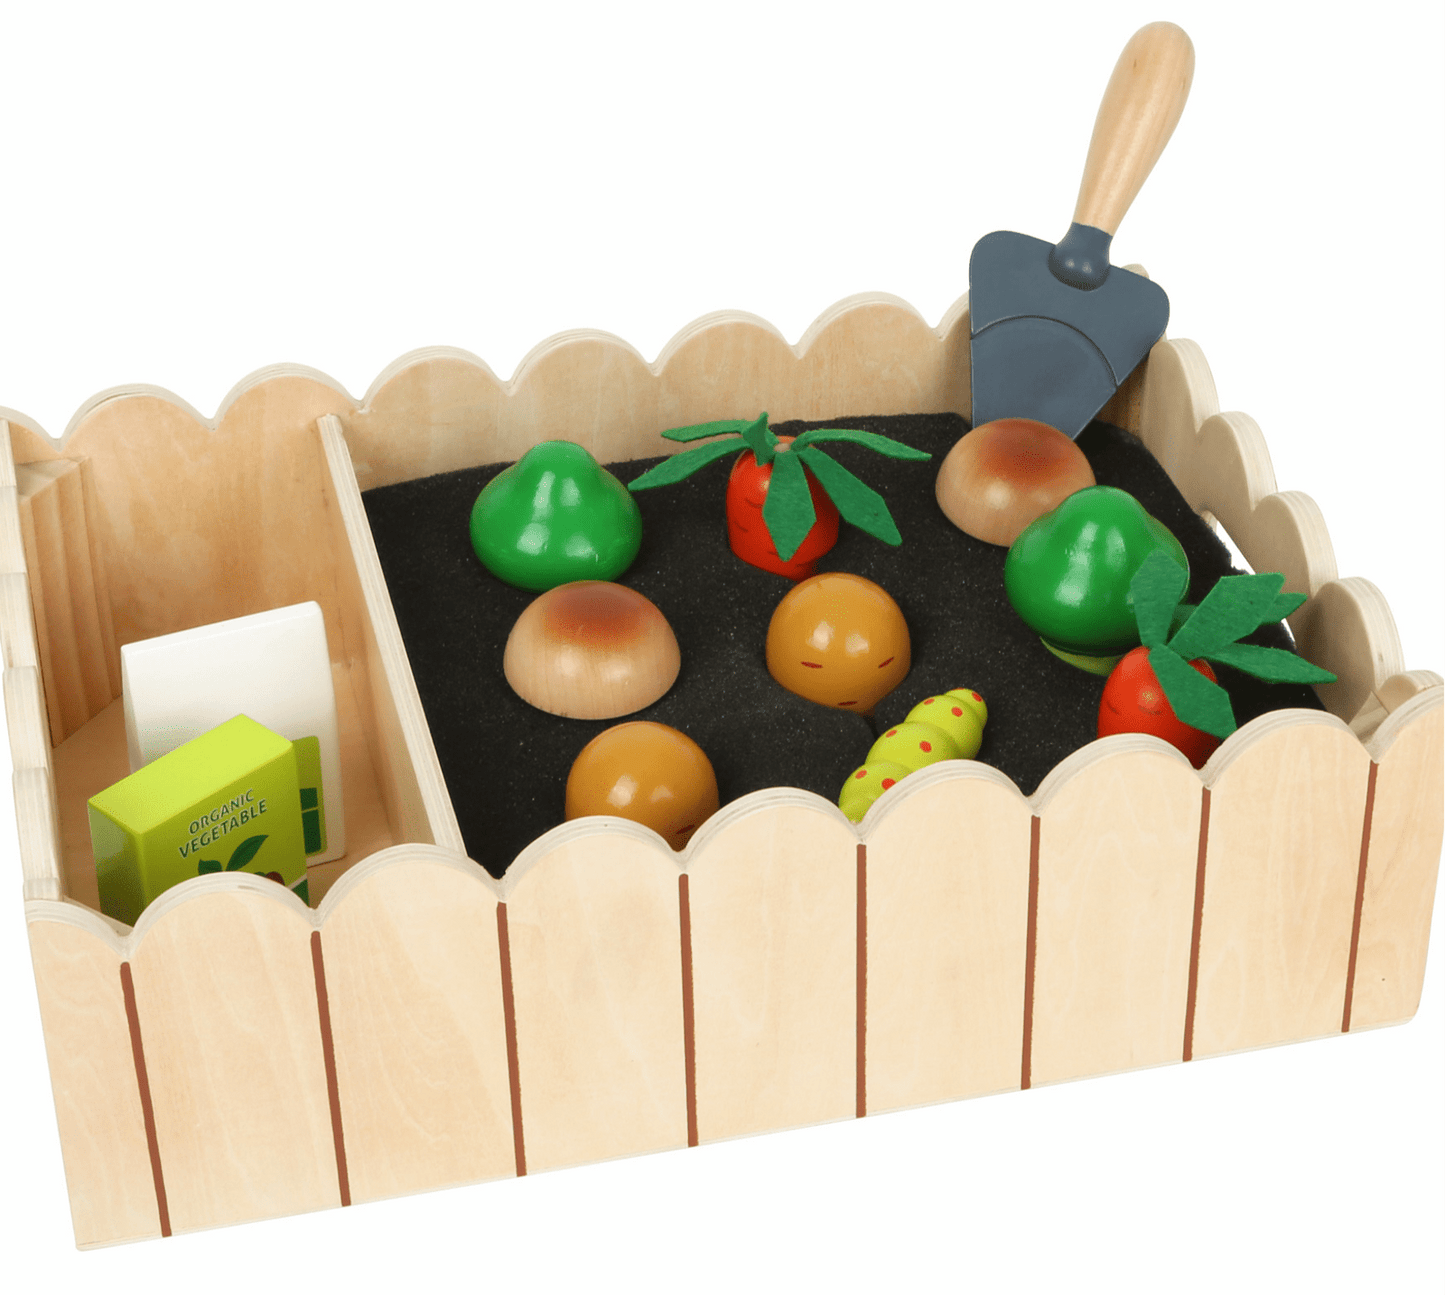 Wooden Vegetable Garden Set